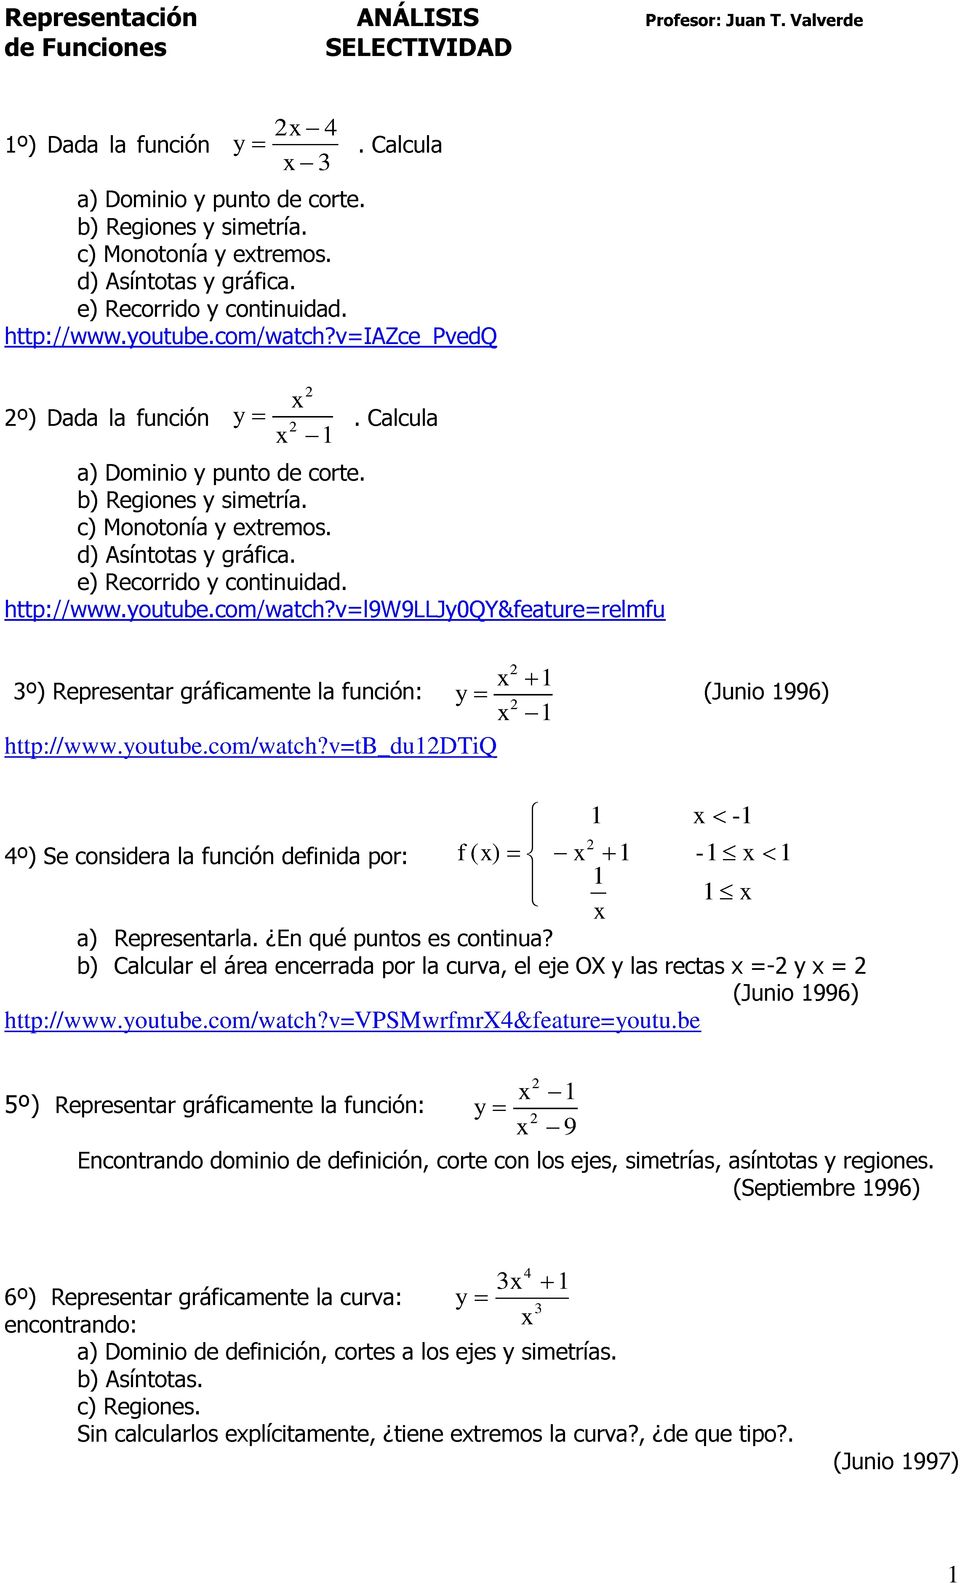 com/watch?v=l9w9lljy0qy&feature=relmfu 1 º) Representar gráficamente la función: y (Junio 1996) 1 http://www.youtube.com/watch?v=tb_du1dtiq 1-1 4º) Se considera la función definida por: f ( ) 1-1 1 1 1 a) Representarla.